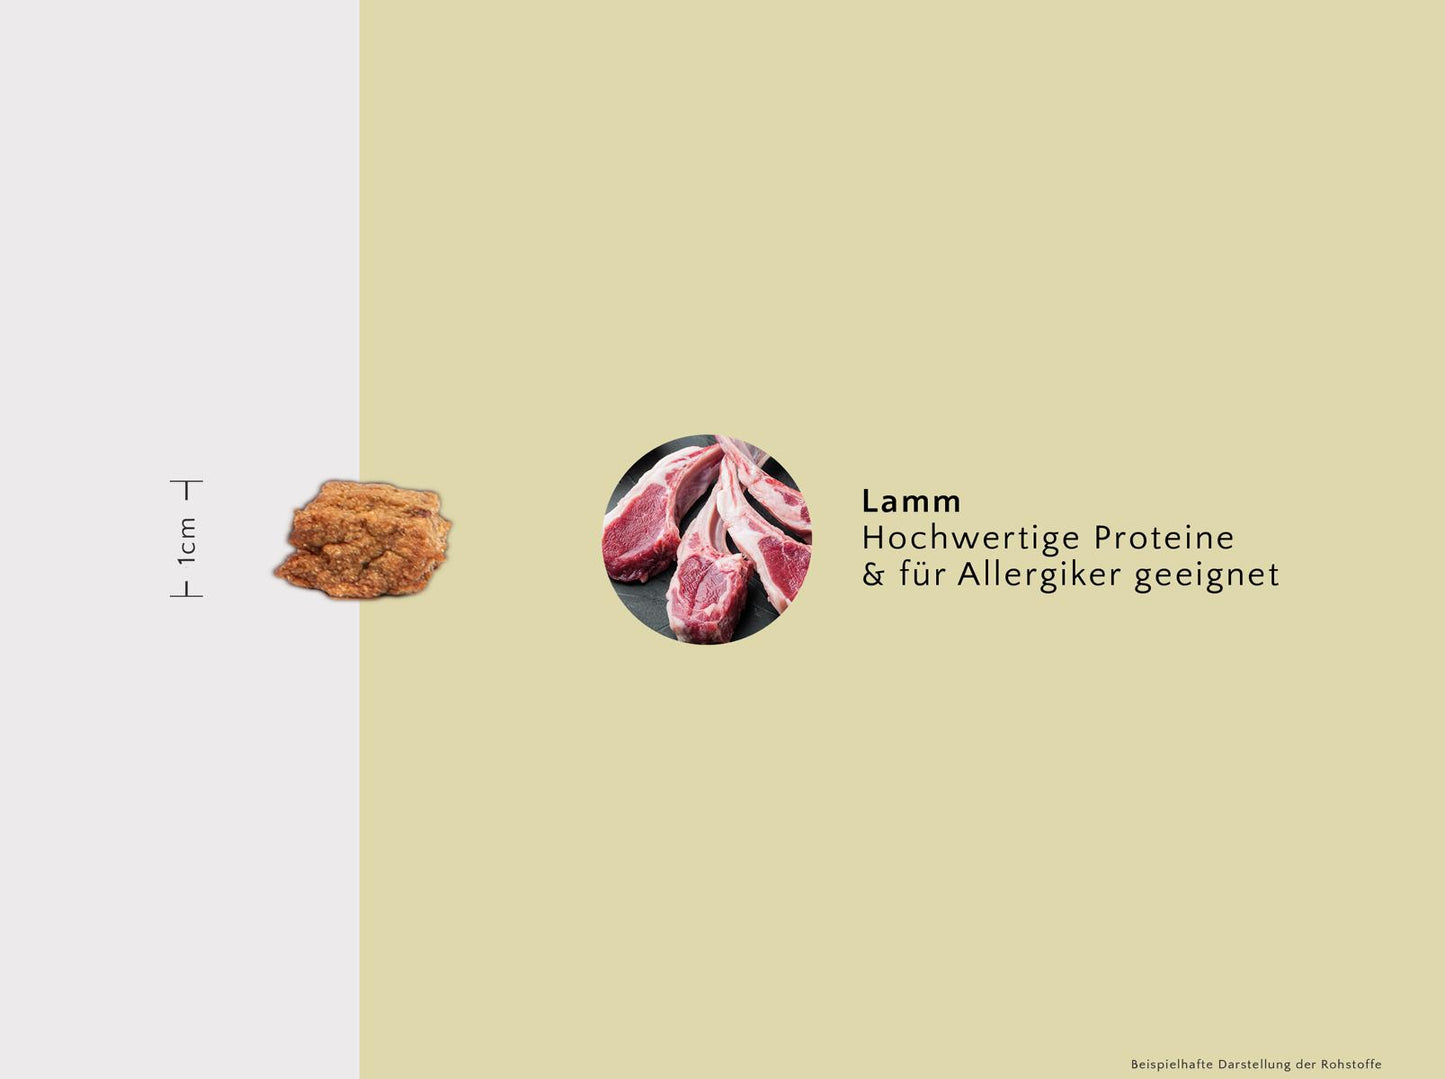 PURE Bites Lamm - aromatischer & softer Trainingssnack